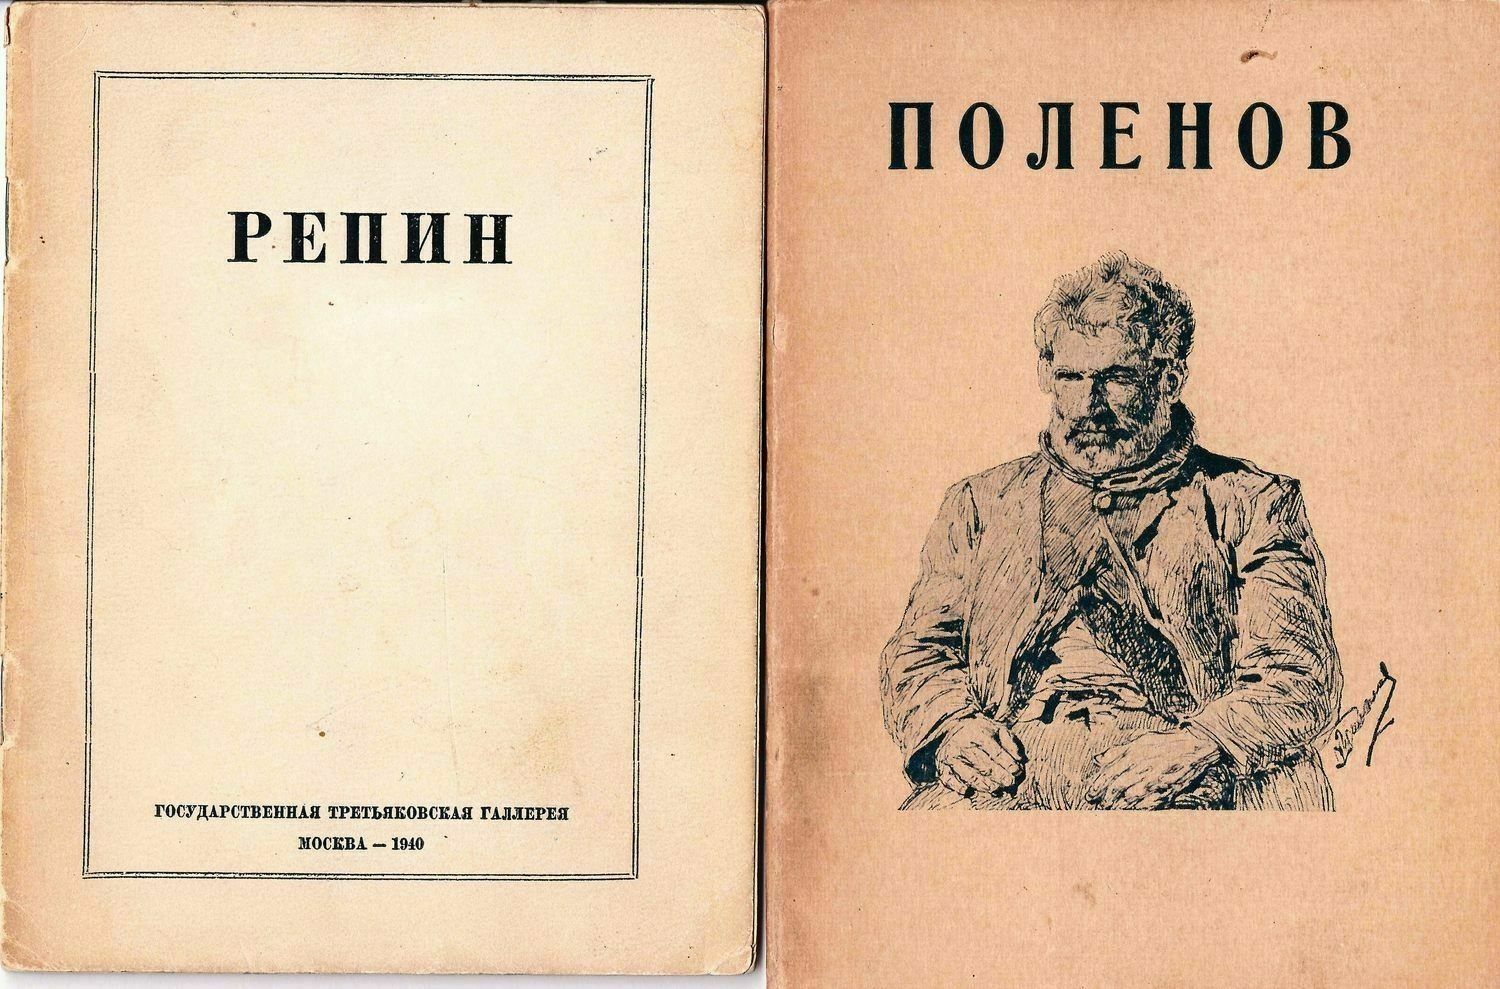 3 издания о русских художниках. 1930-е - 1940-е годы.